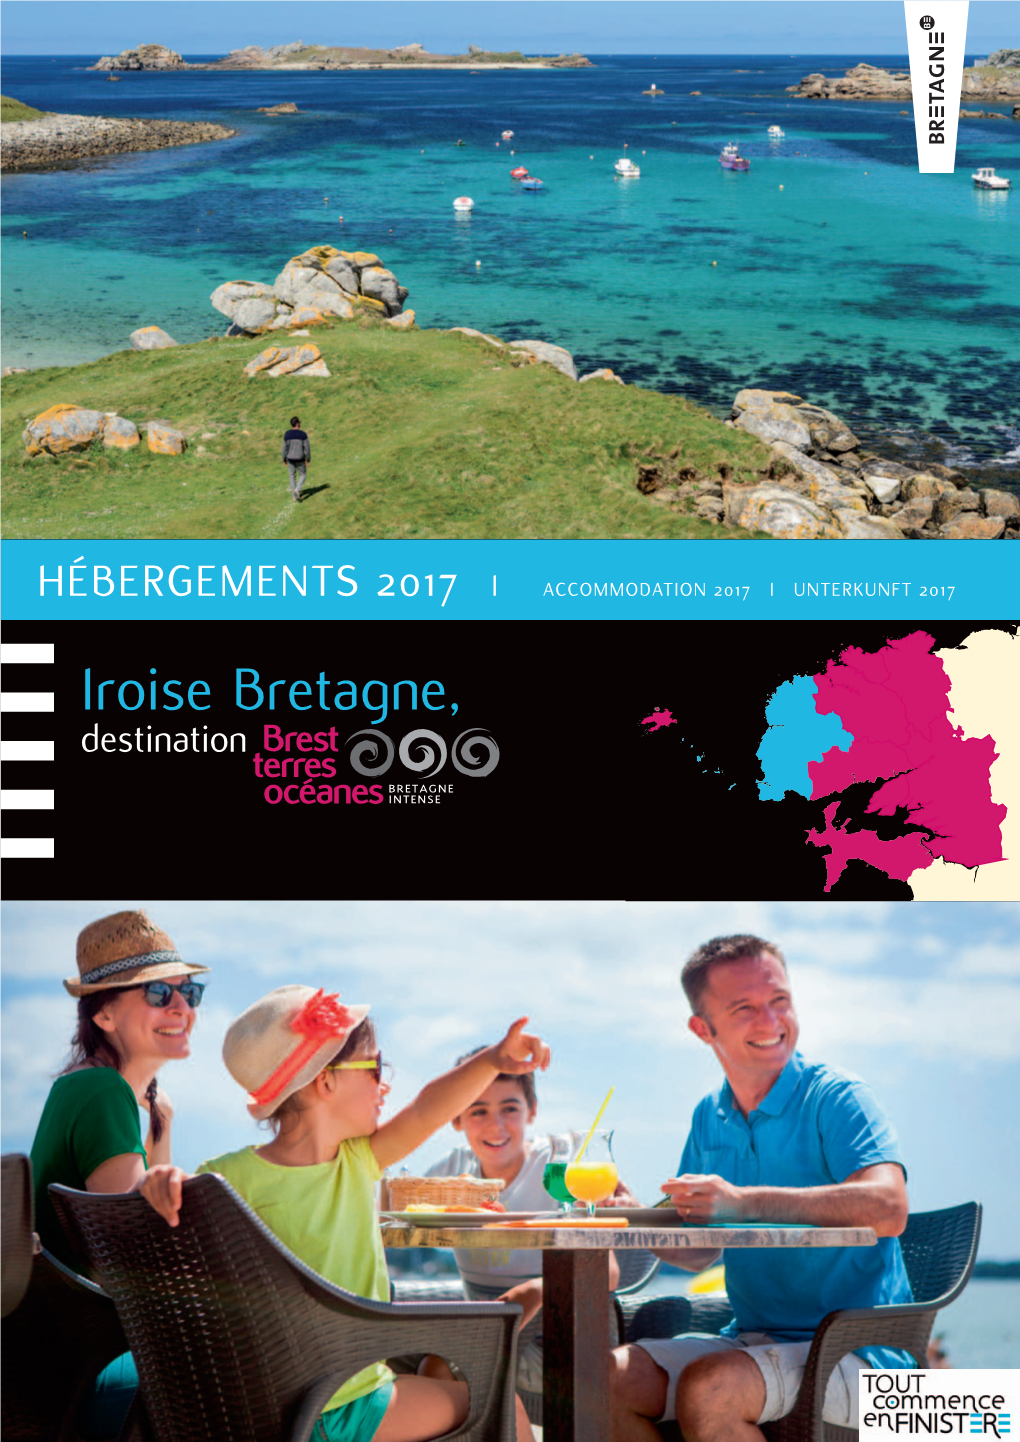 Iroise Bretagne, Destination D 903 D 514